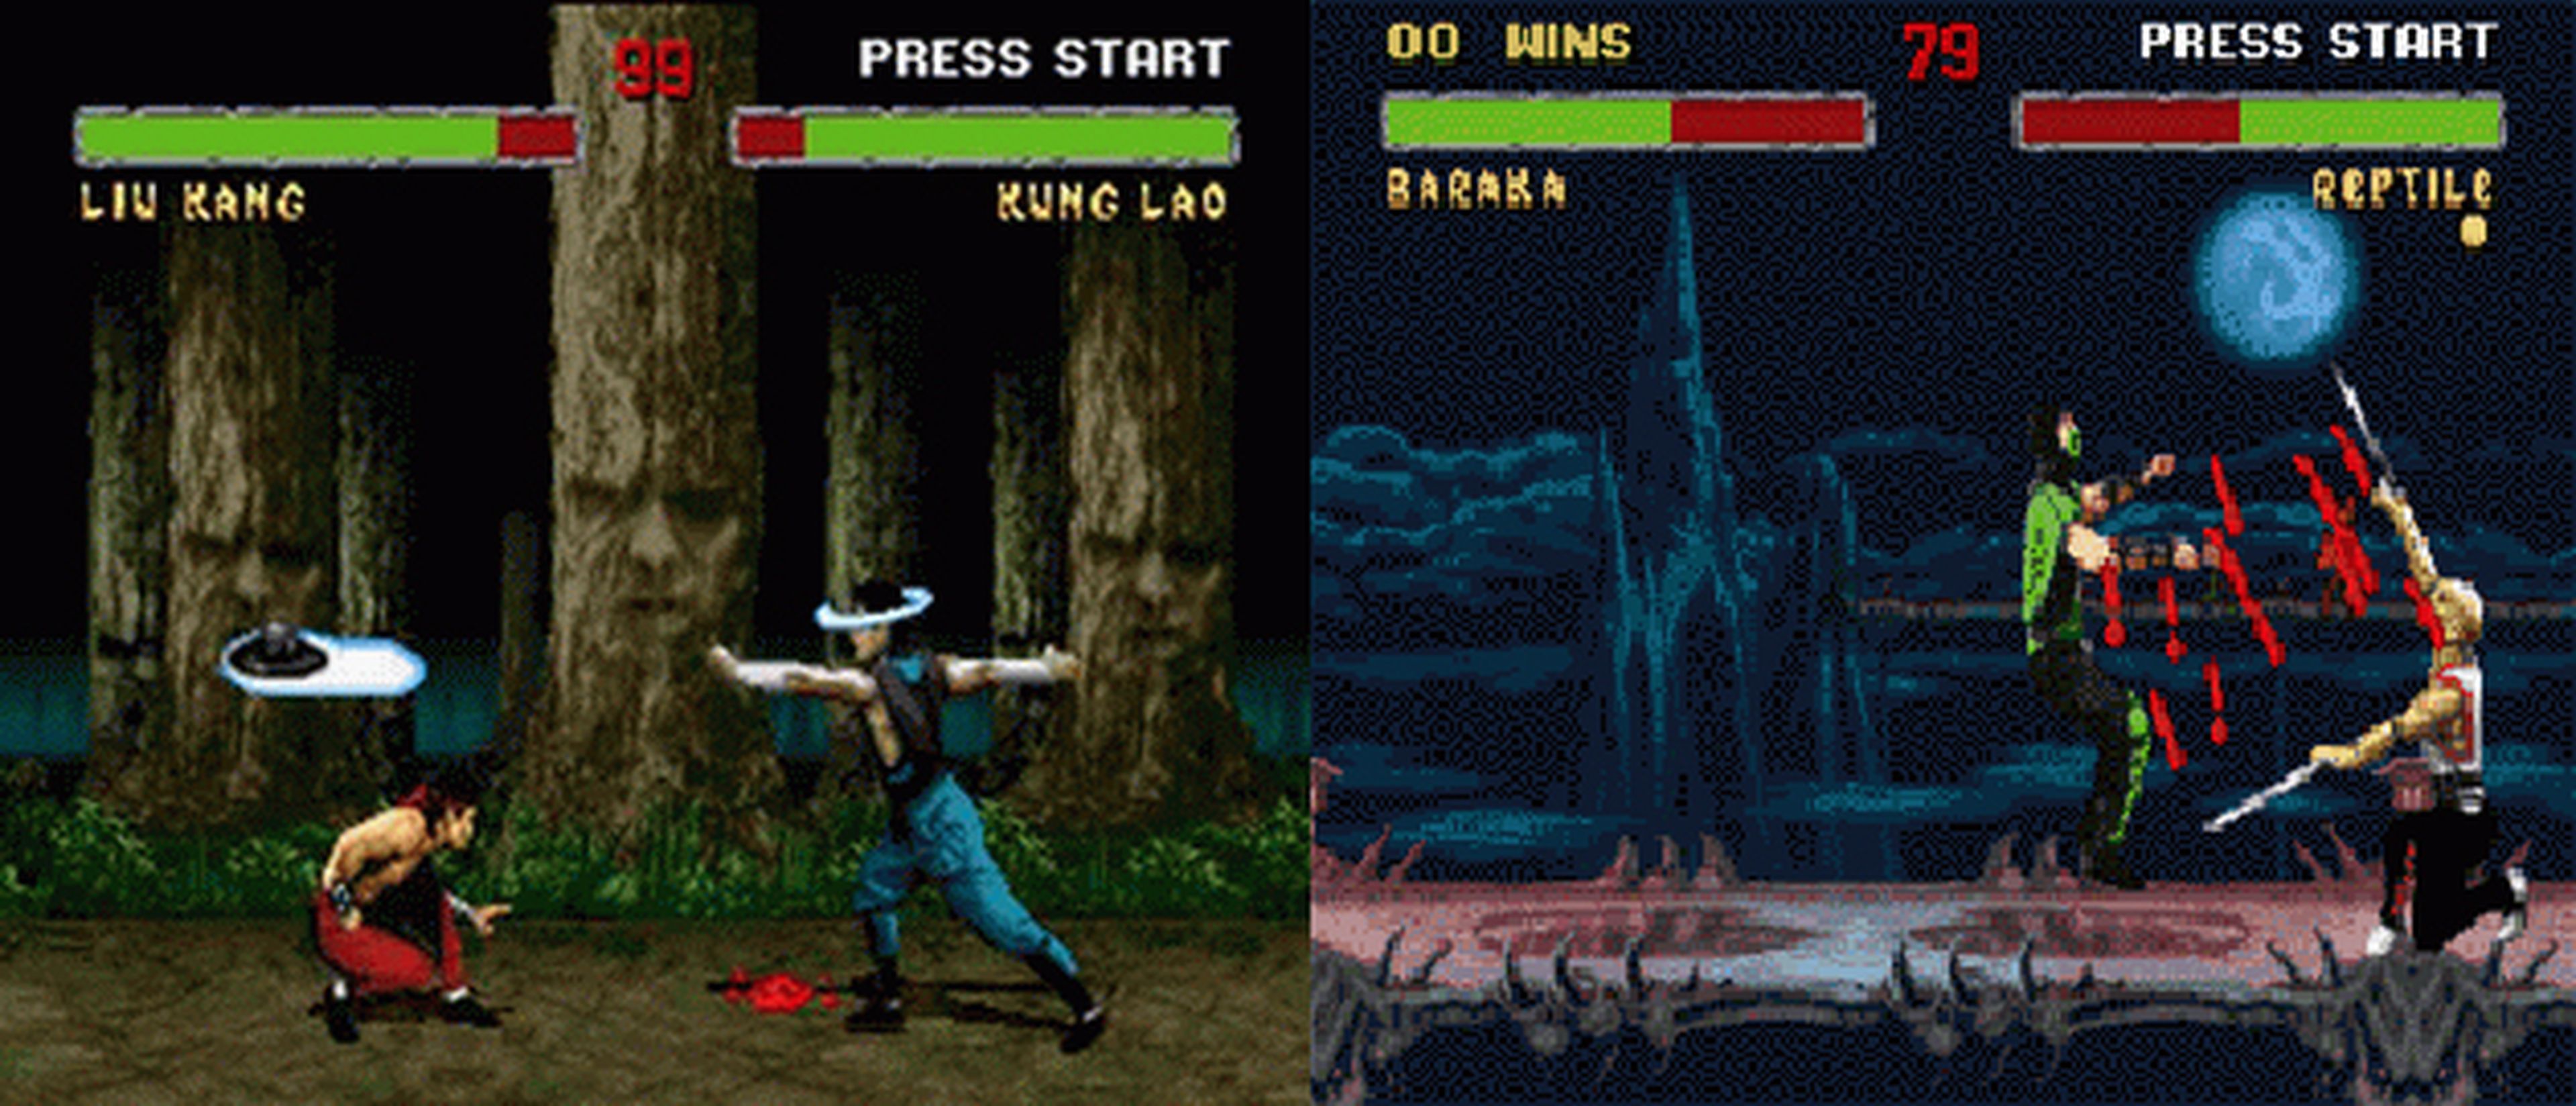 Hobby Consolas, hace 20 años: Mortal Kombat II